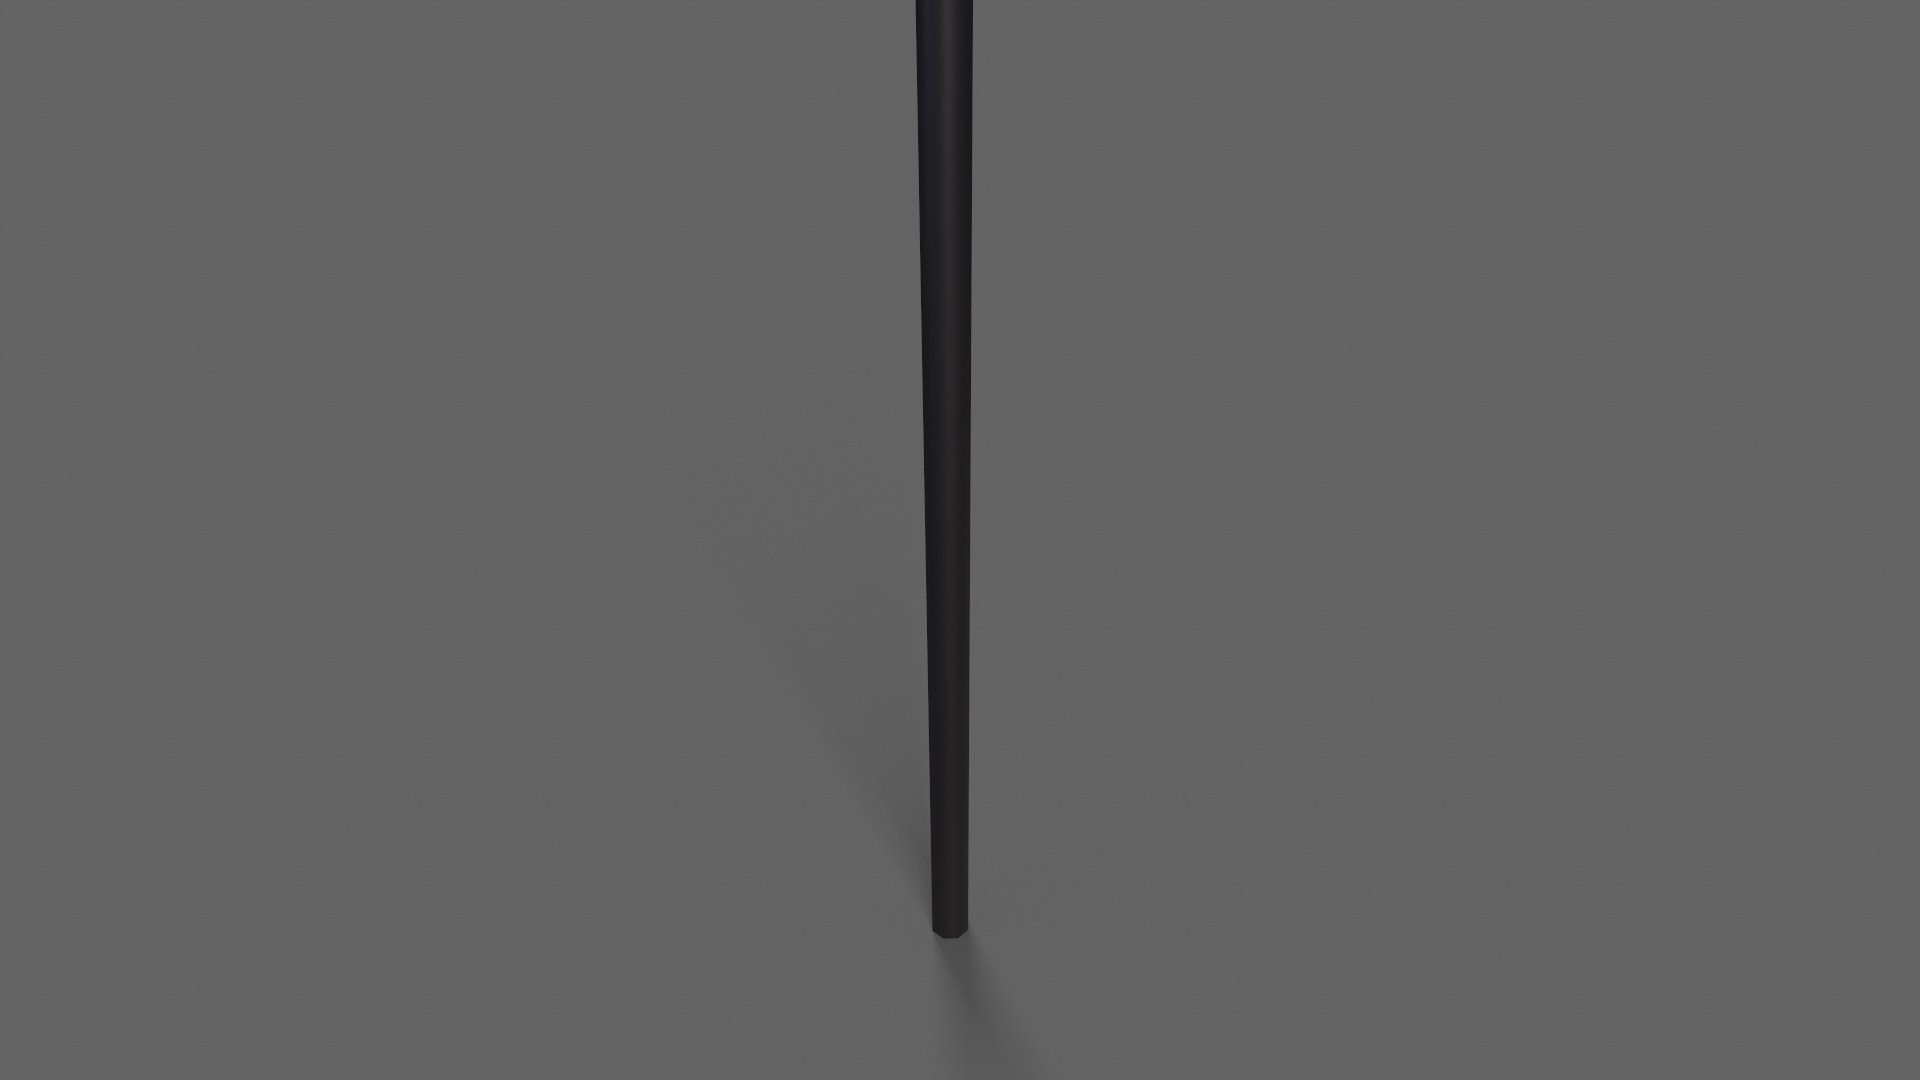 PBR Wushu Stick Black 3D model - TurboSquid 1941939